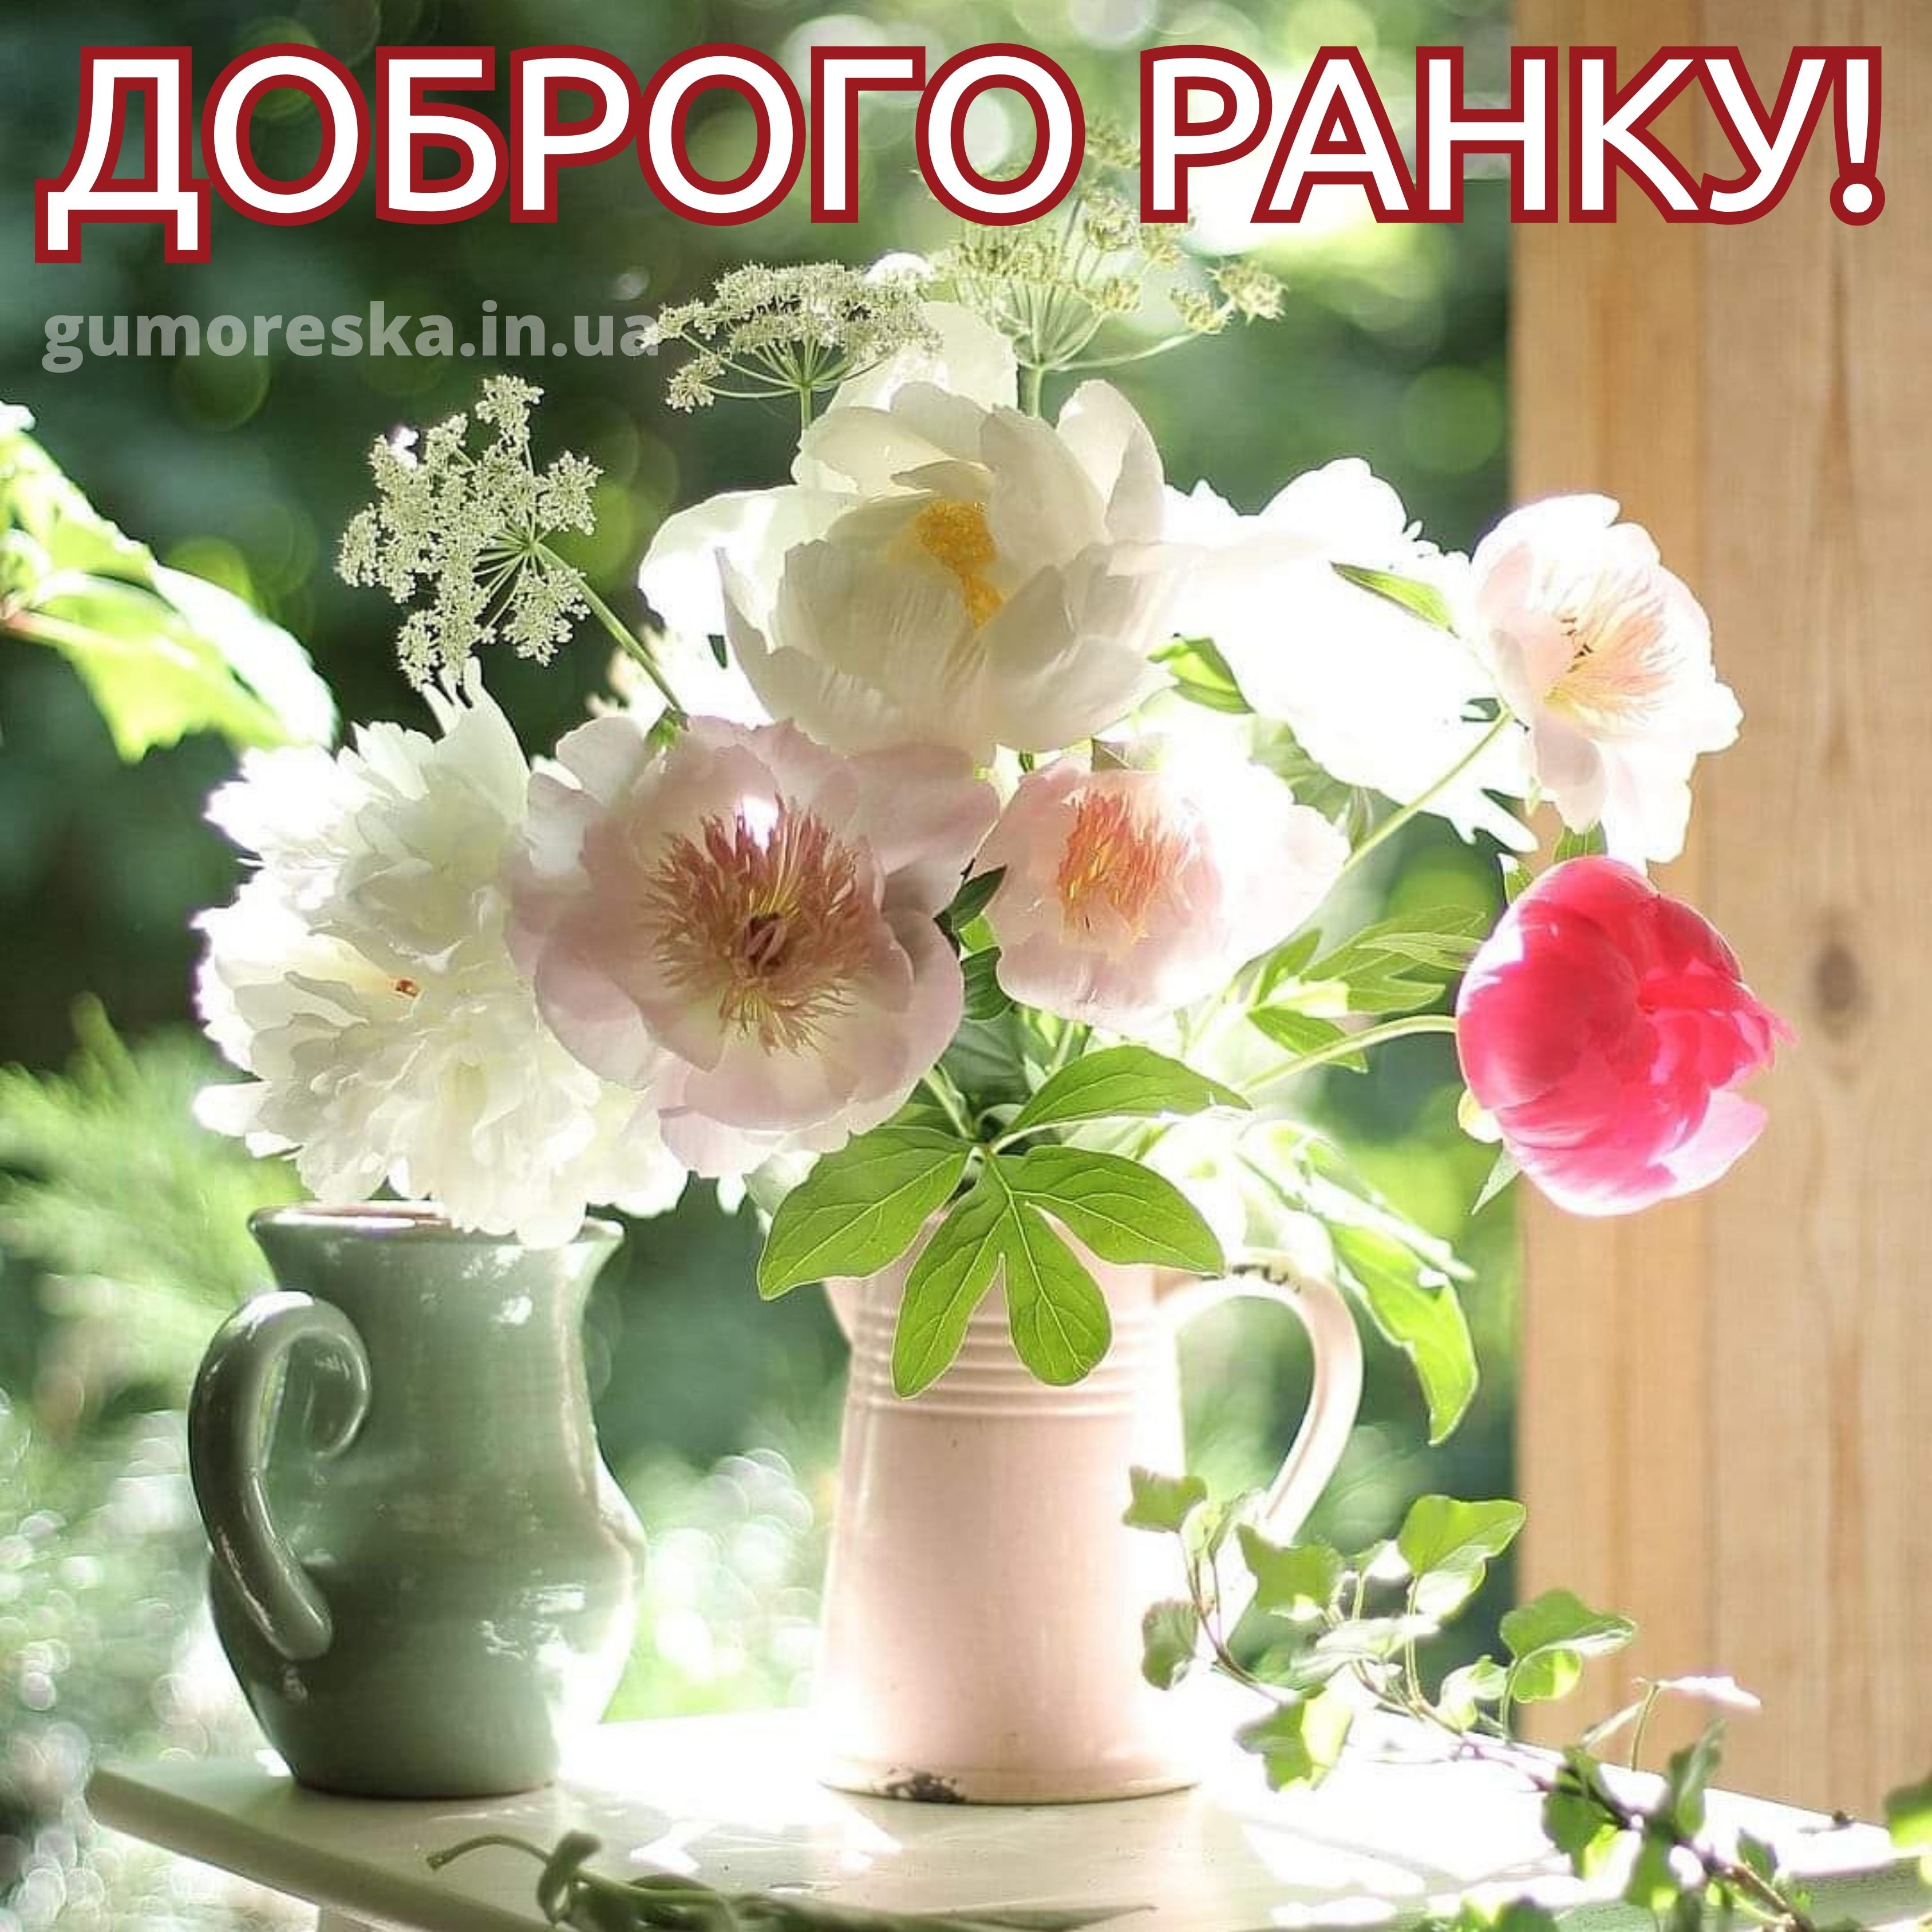 Добрейшего утречка цветы. Утренние цветы. Нежный цветок. Летние цветы в вазе. Нежные солнечные цветы.